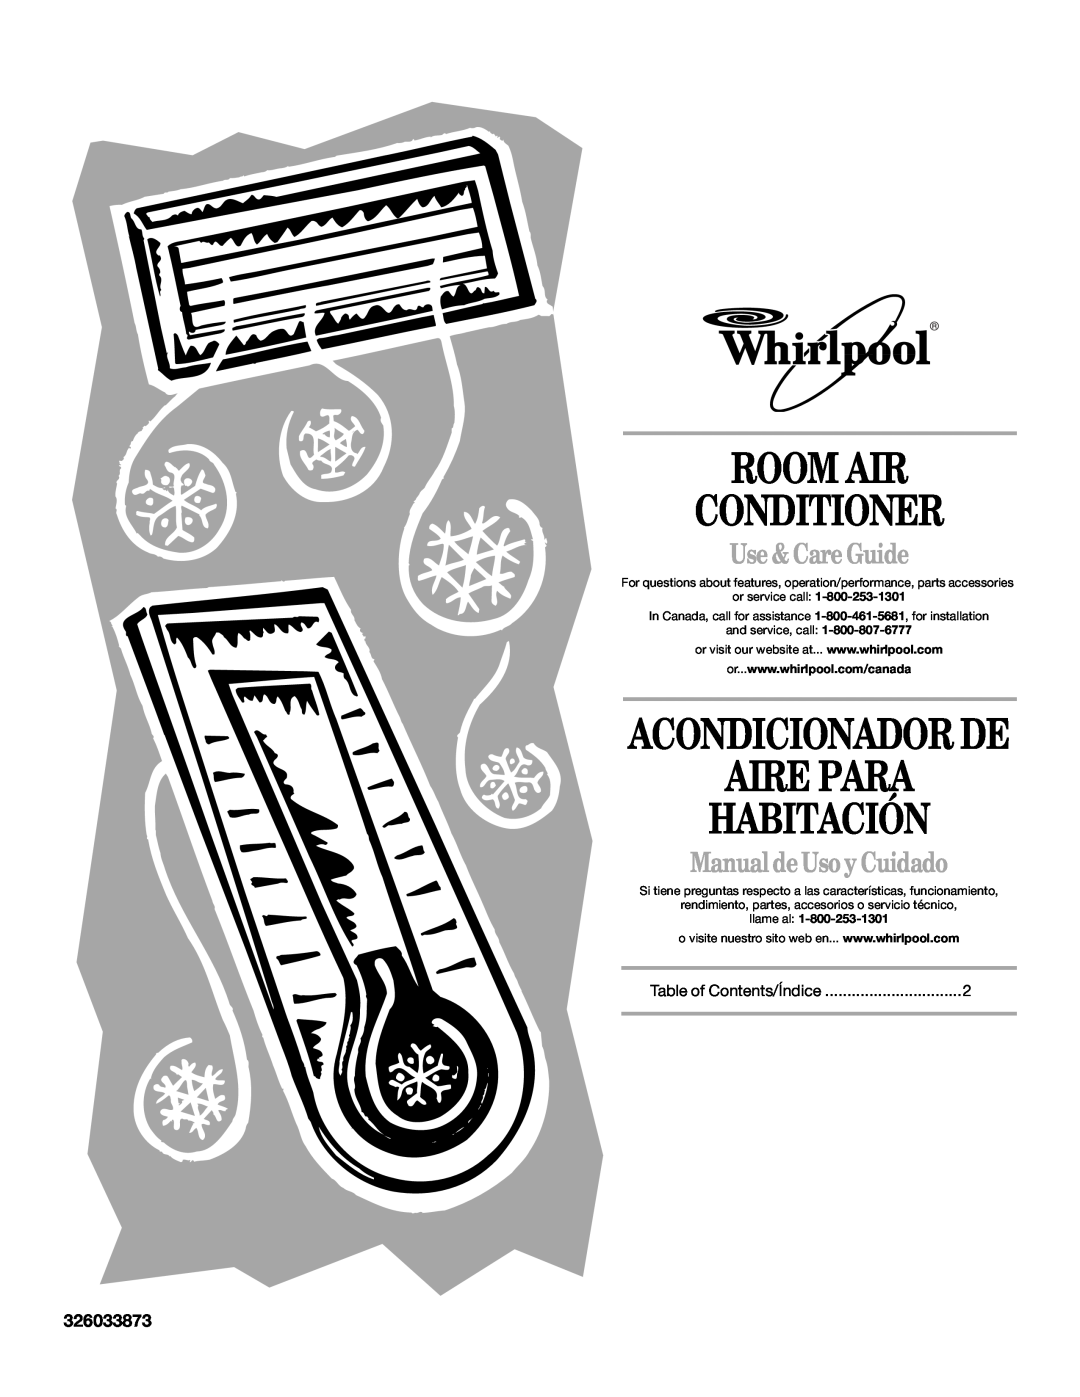 Whirlpool ACQ062MP0 manual Room Air Conditioner, Aire Para Habitación, Acondicionador De, Use & Care Guide, 326033873 